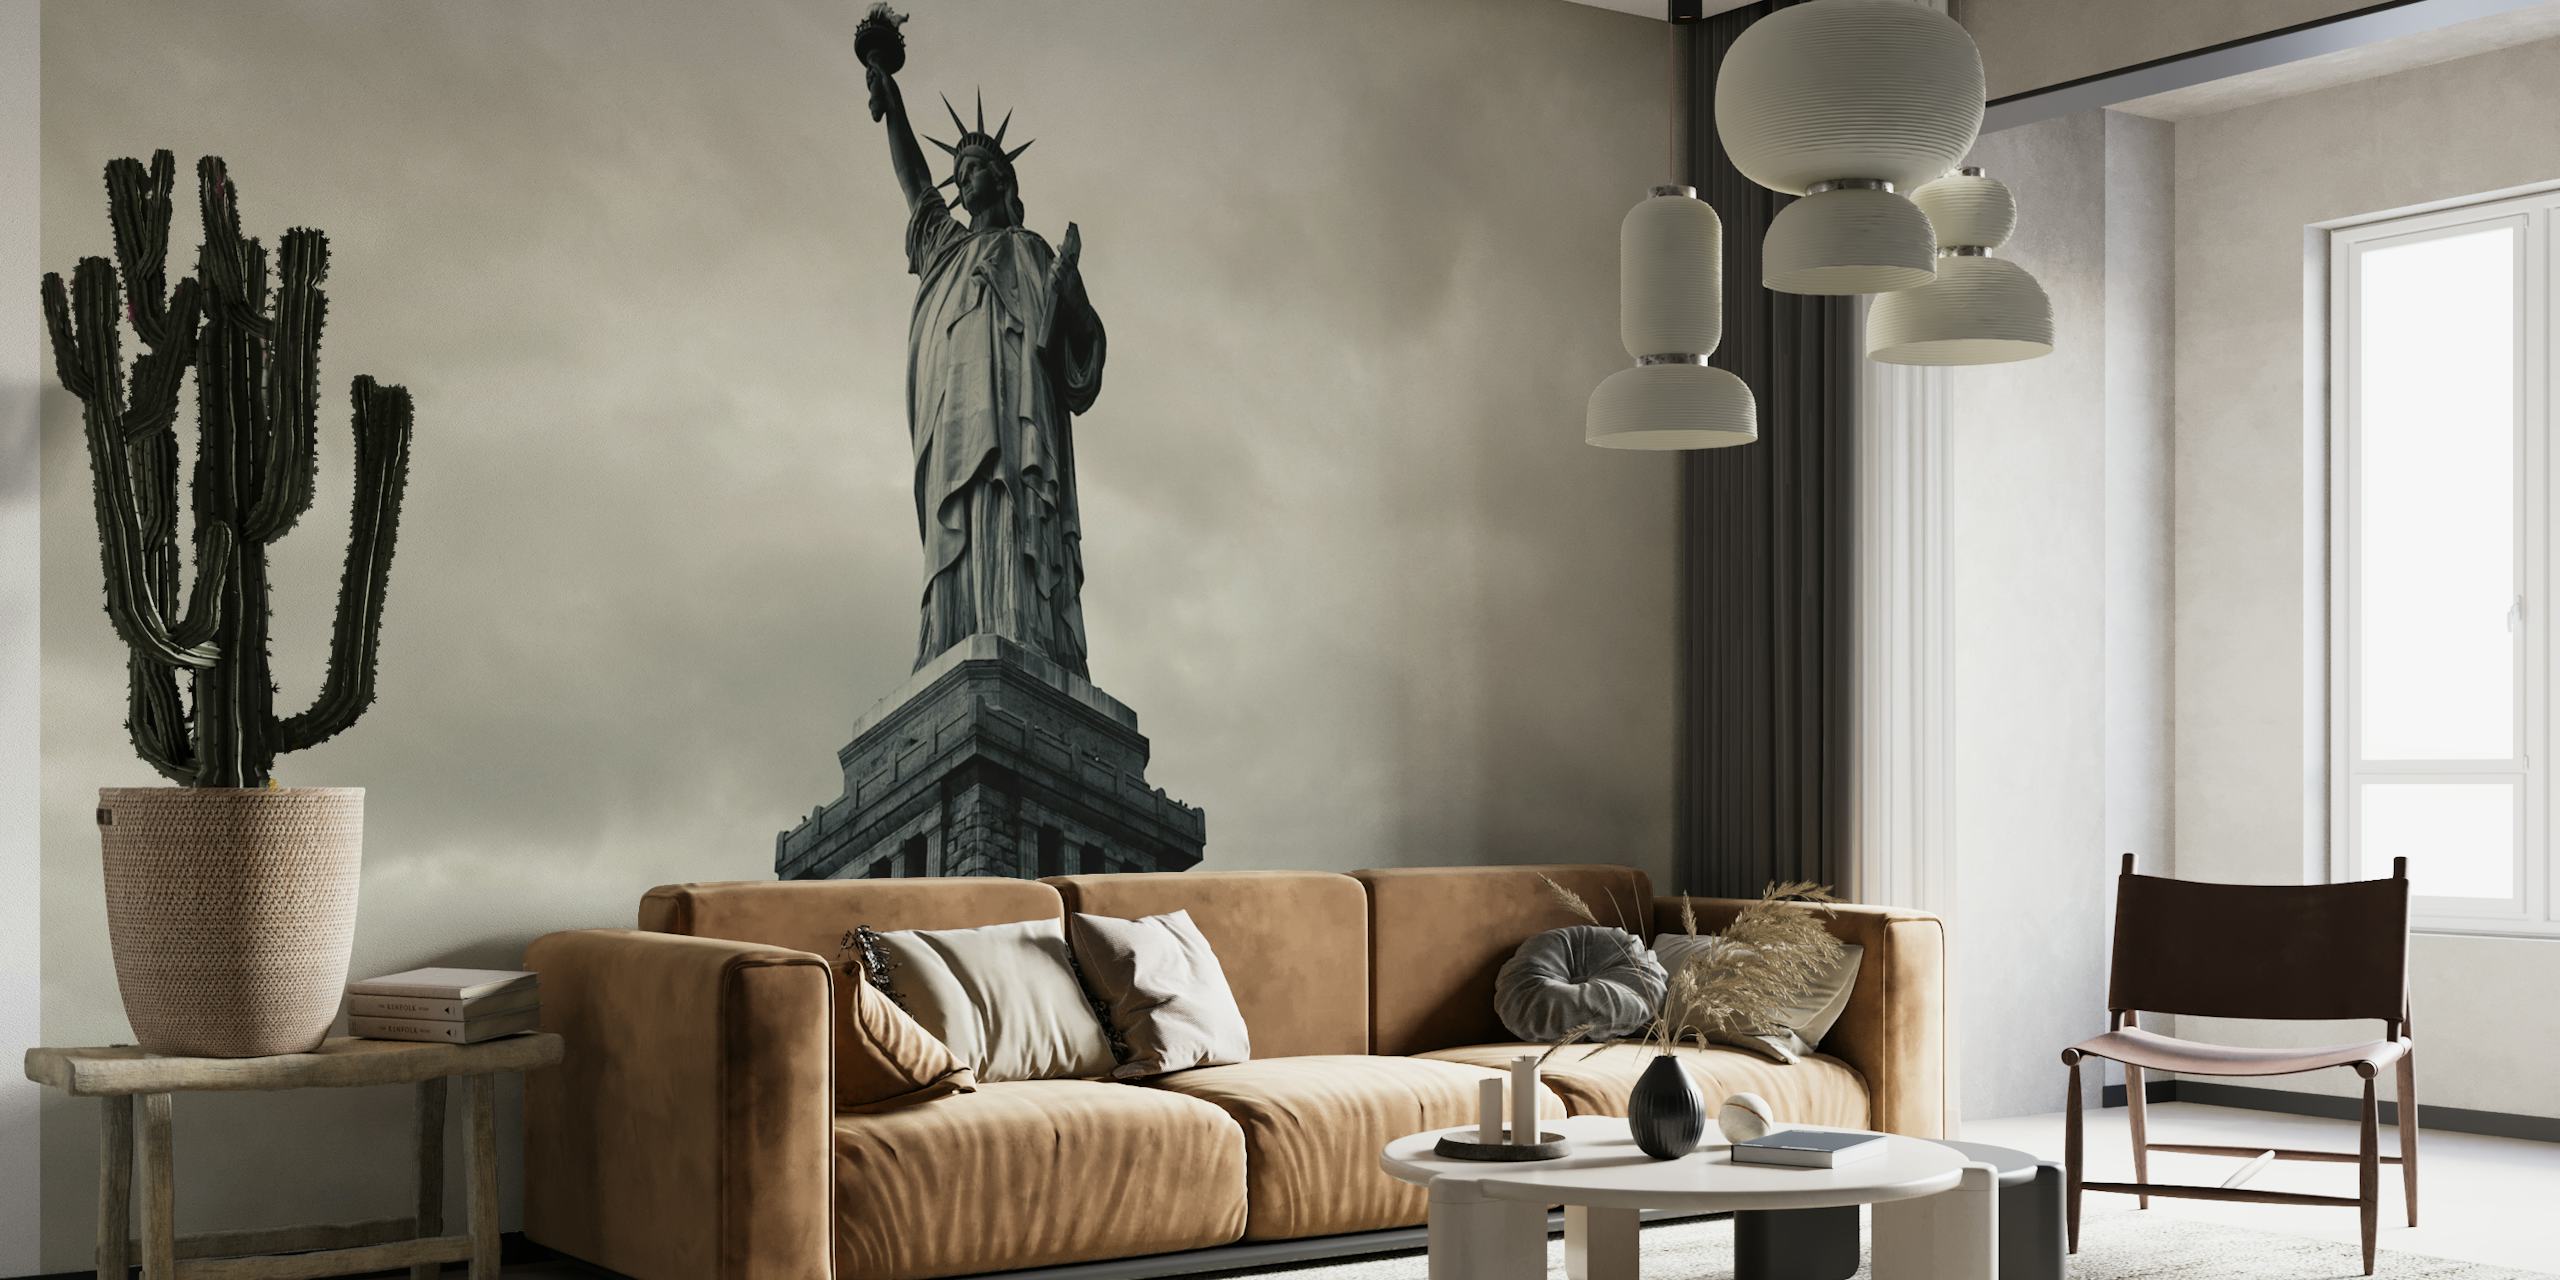 Zwart-wit fotobehang van een iconisch Amerikaans standbeeld dat vrijheid en patriottisme symboliseert